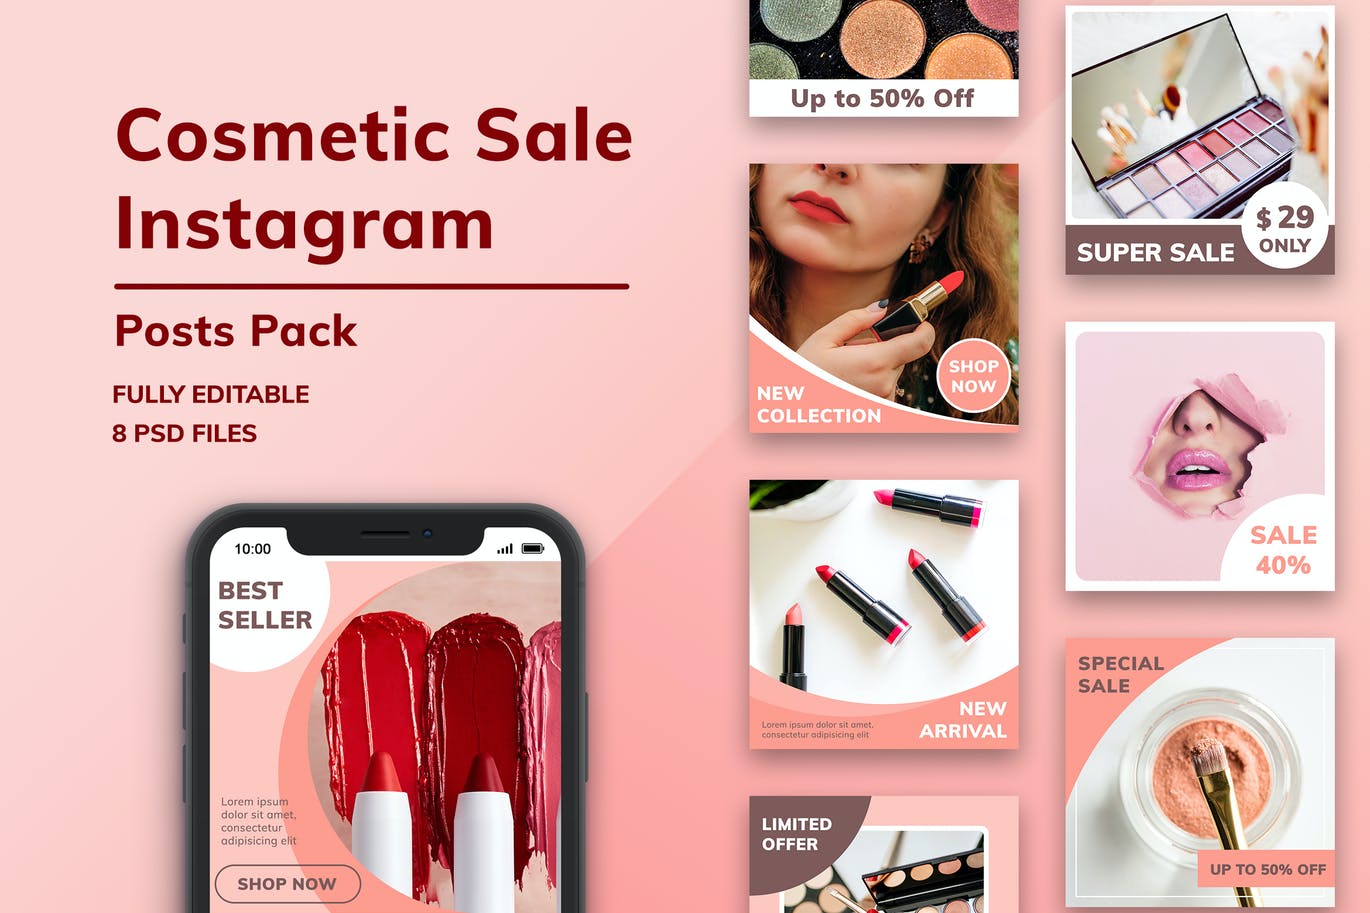 化妆品折扣大促销Instagram帖子社交素材包 Cosmetic Sale Instagram Posts Pack设计素材模板